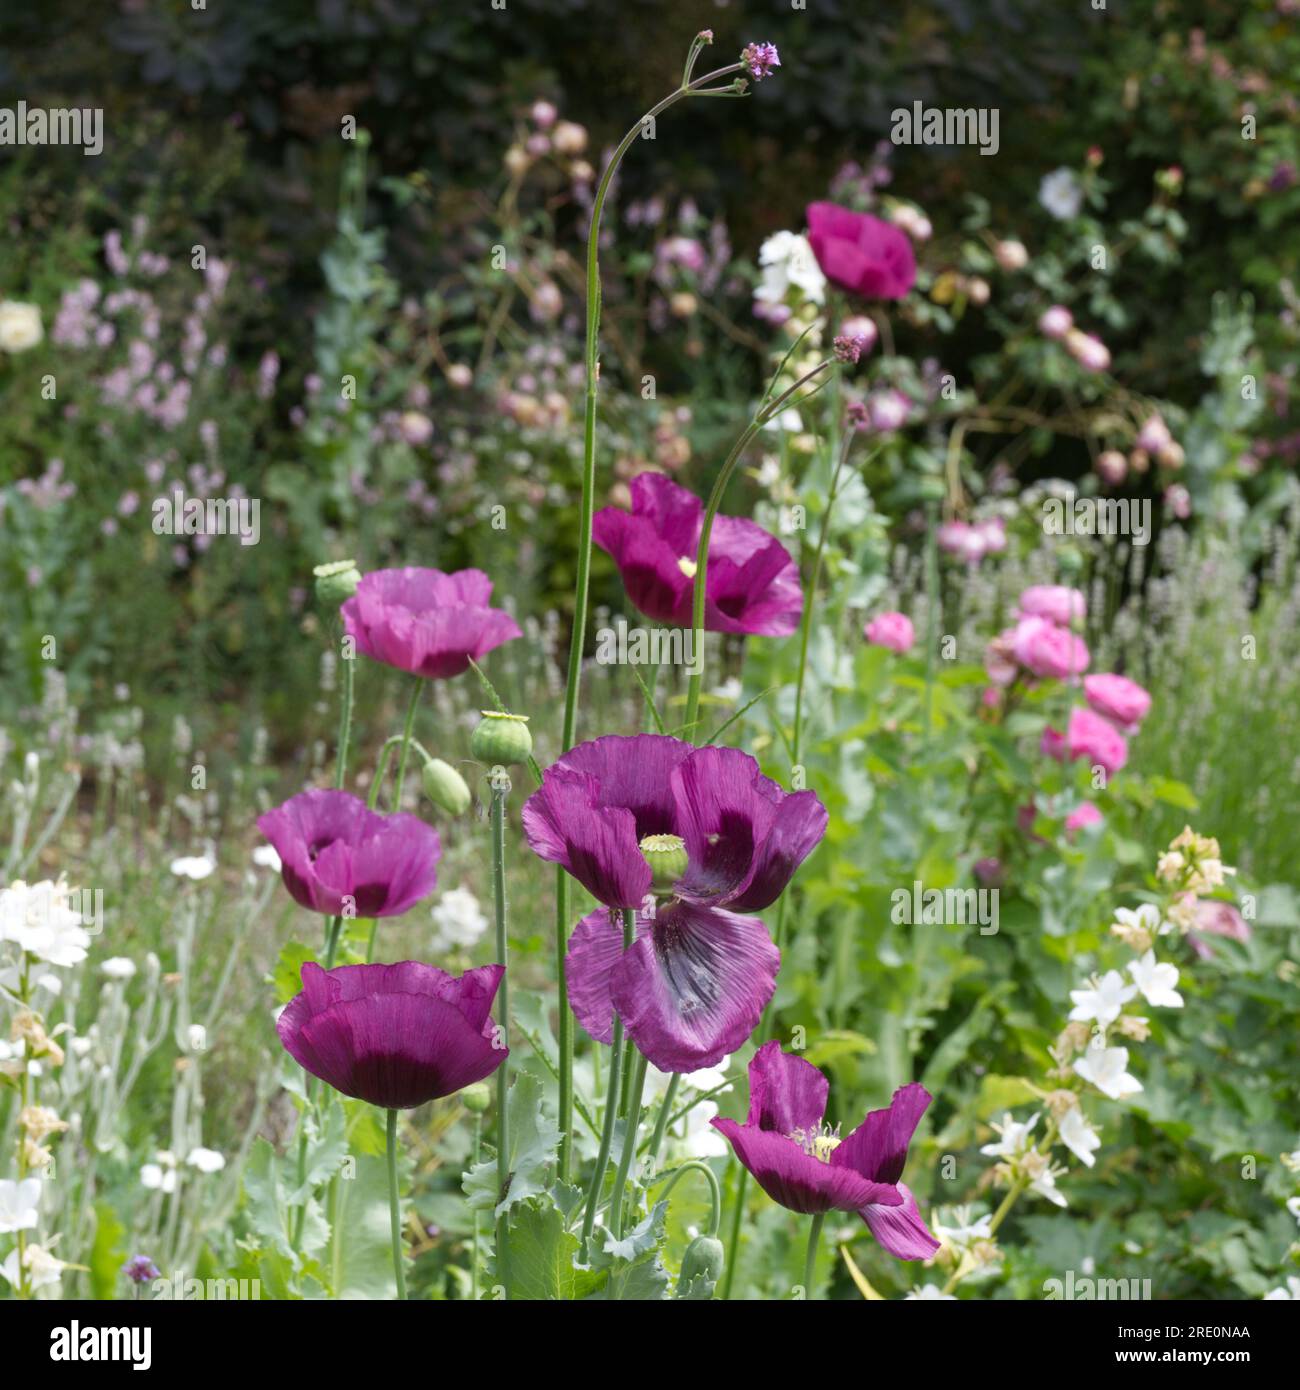 Sommergartenszene mit Opiummohn, Papaver somniferum, Rosen, weißer campanula, Verbena bonariensis und anderen Blumen im britischen Garten Juni Stockfoto